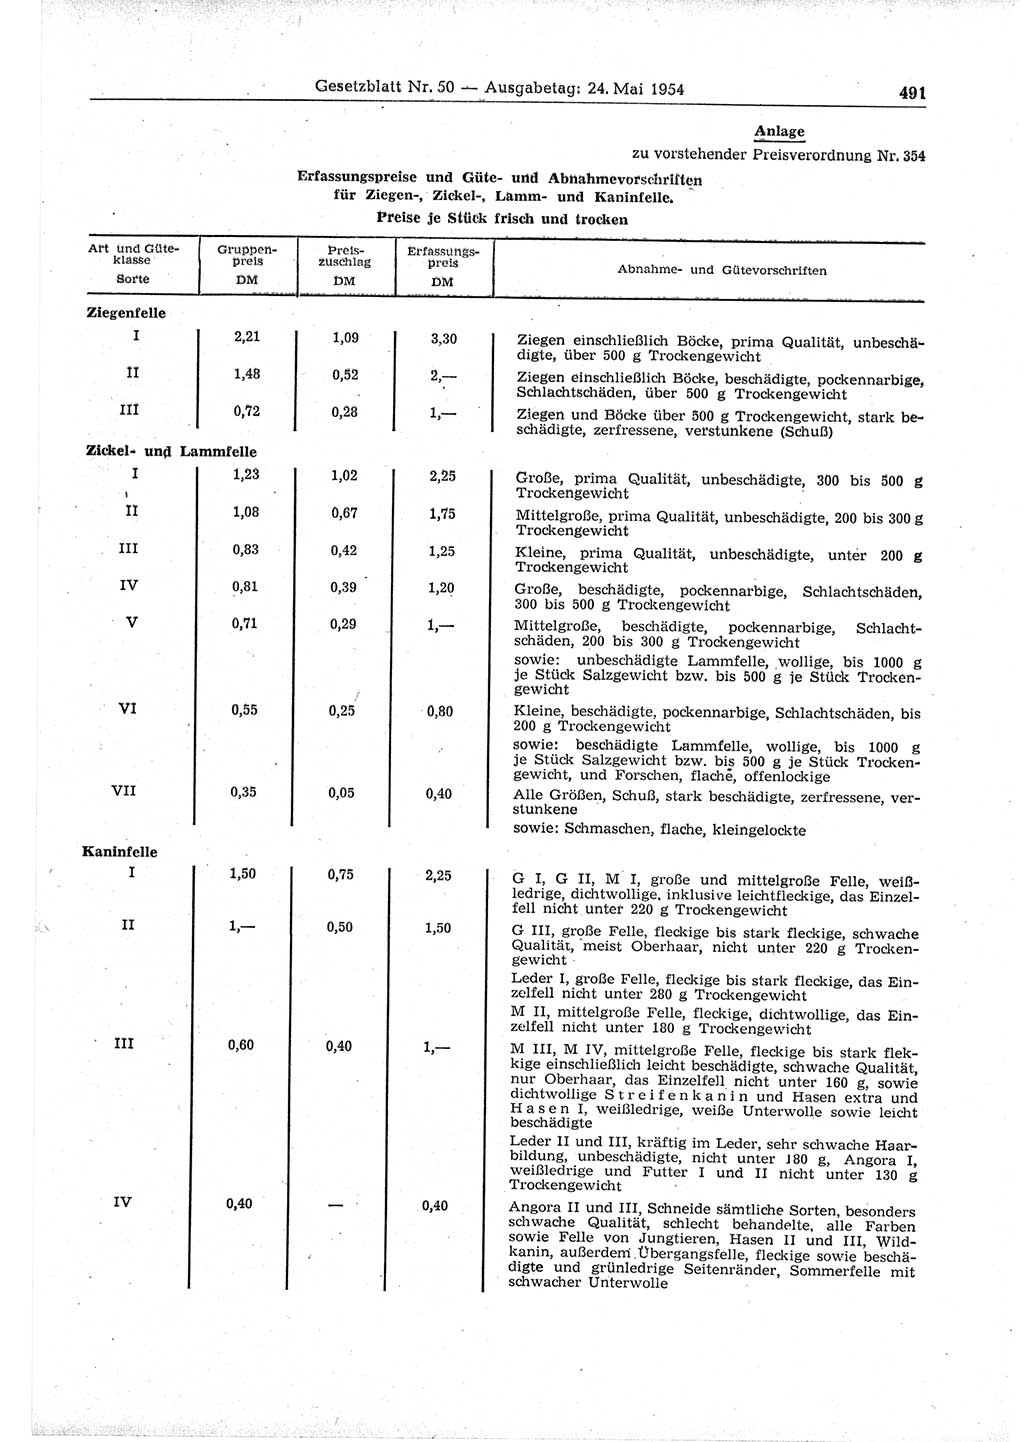 Gesetzblatt (GBl.) der Deutschen Demokratischen Republik (DDR) 1954, Seite 491 (GBl. DDR 1954, S. 491)